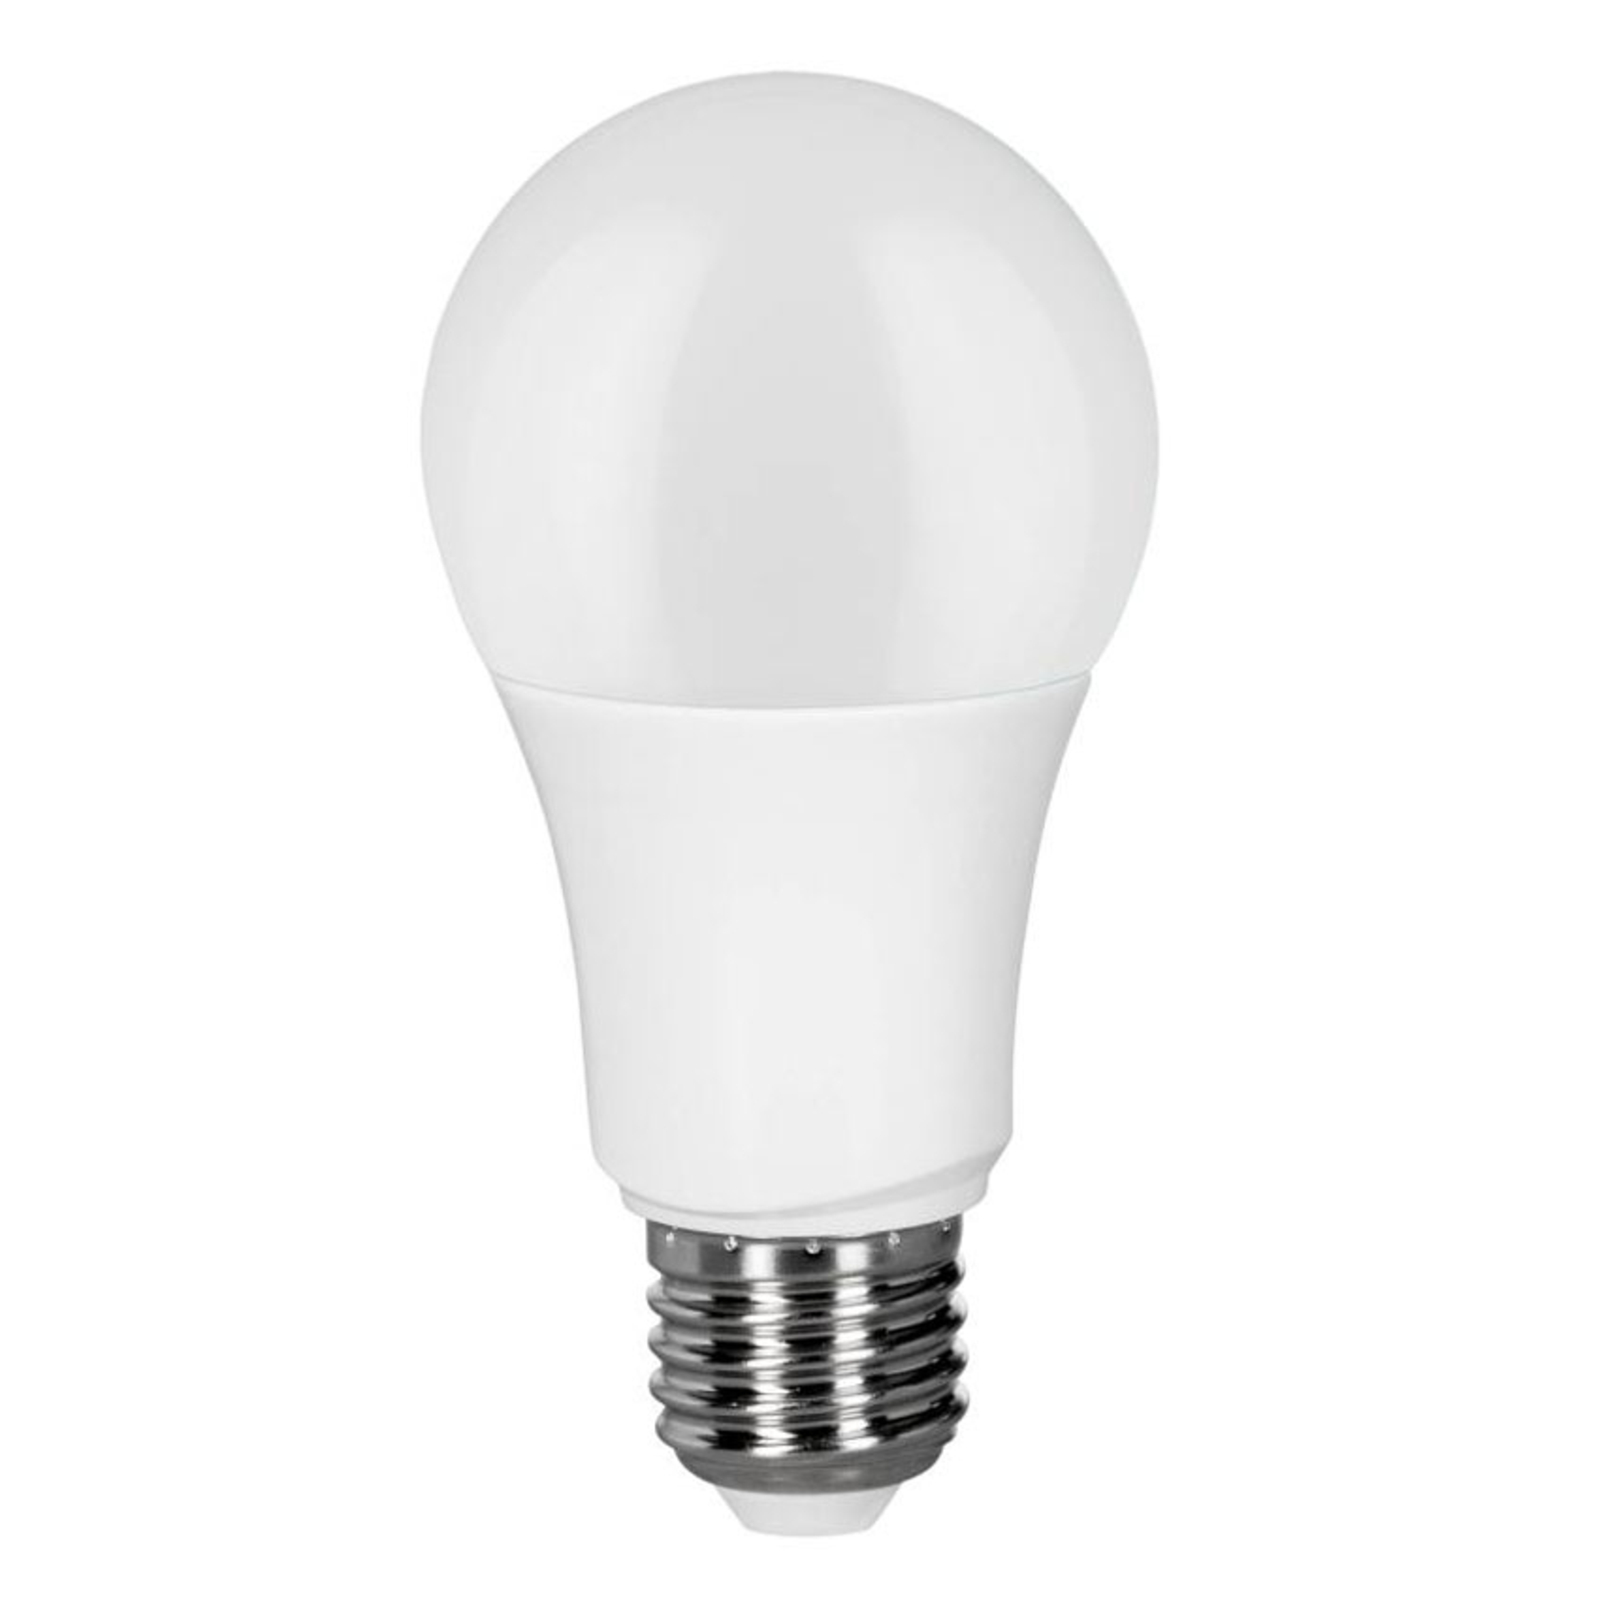 Müller Licht zatamnjena bijela LED svjetiljka E27 9W, CCT